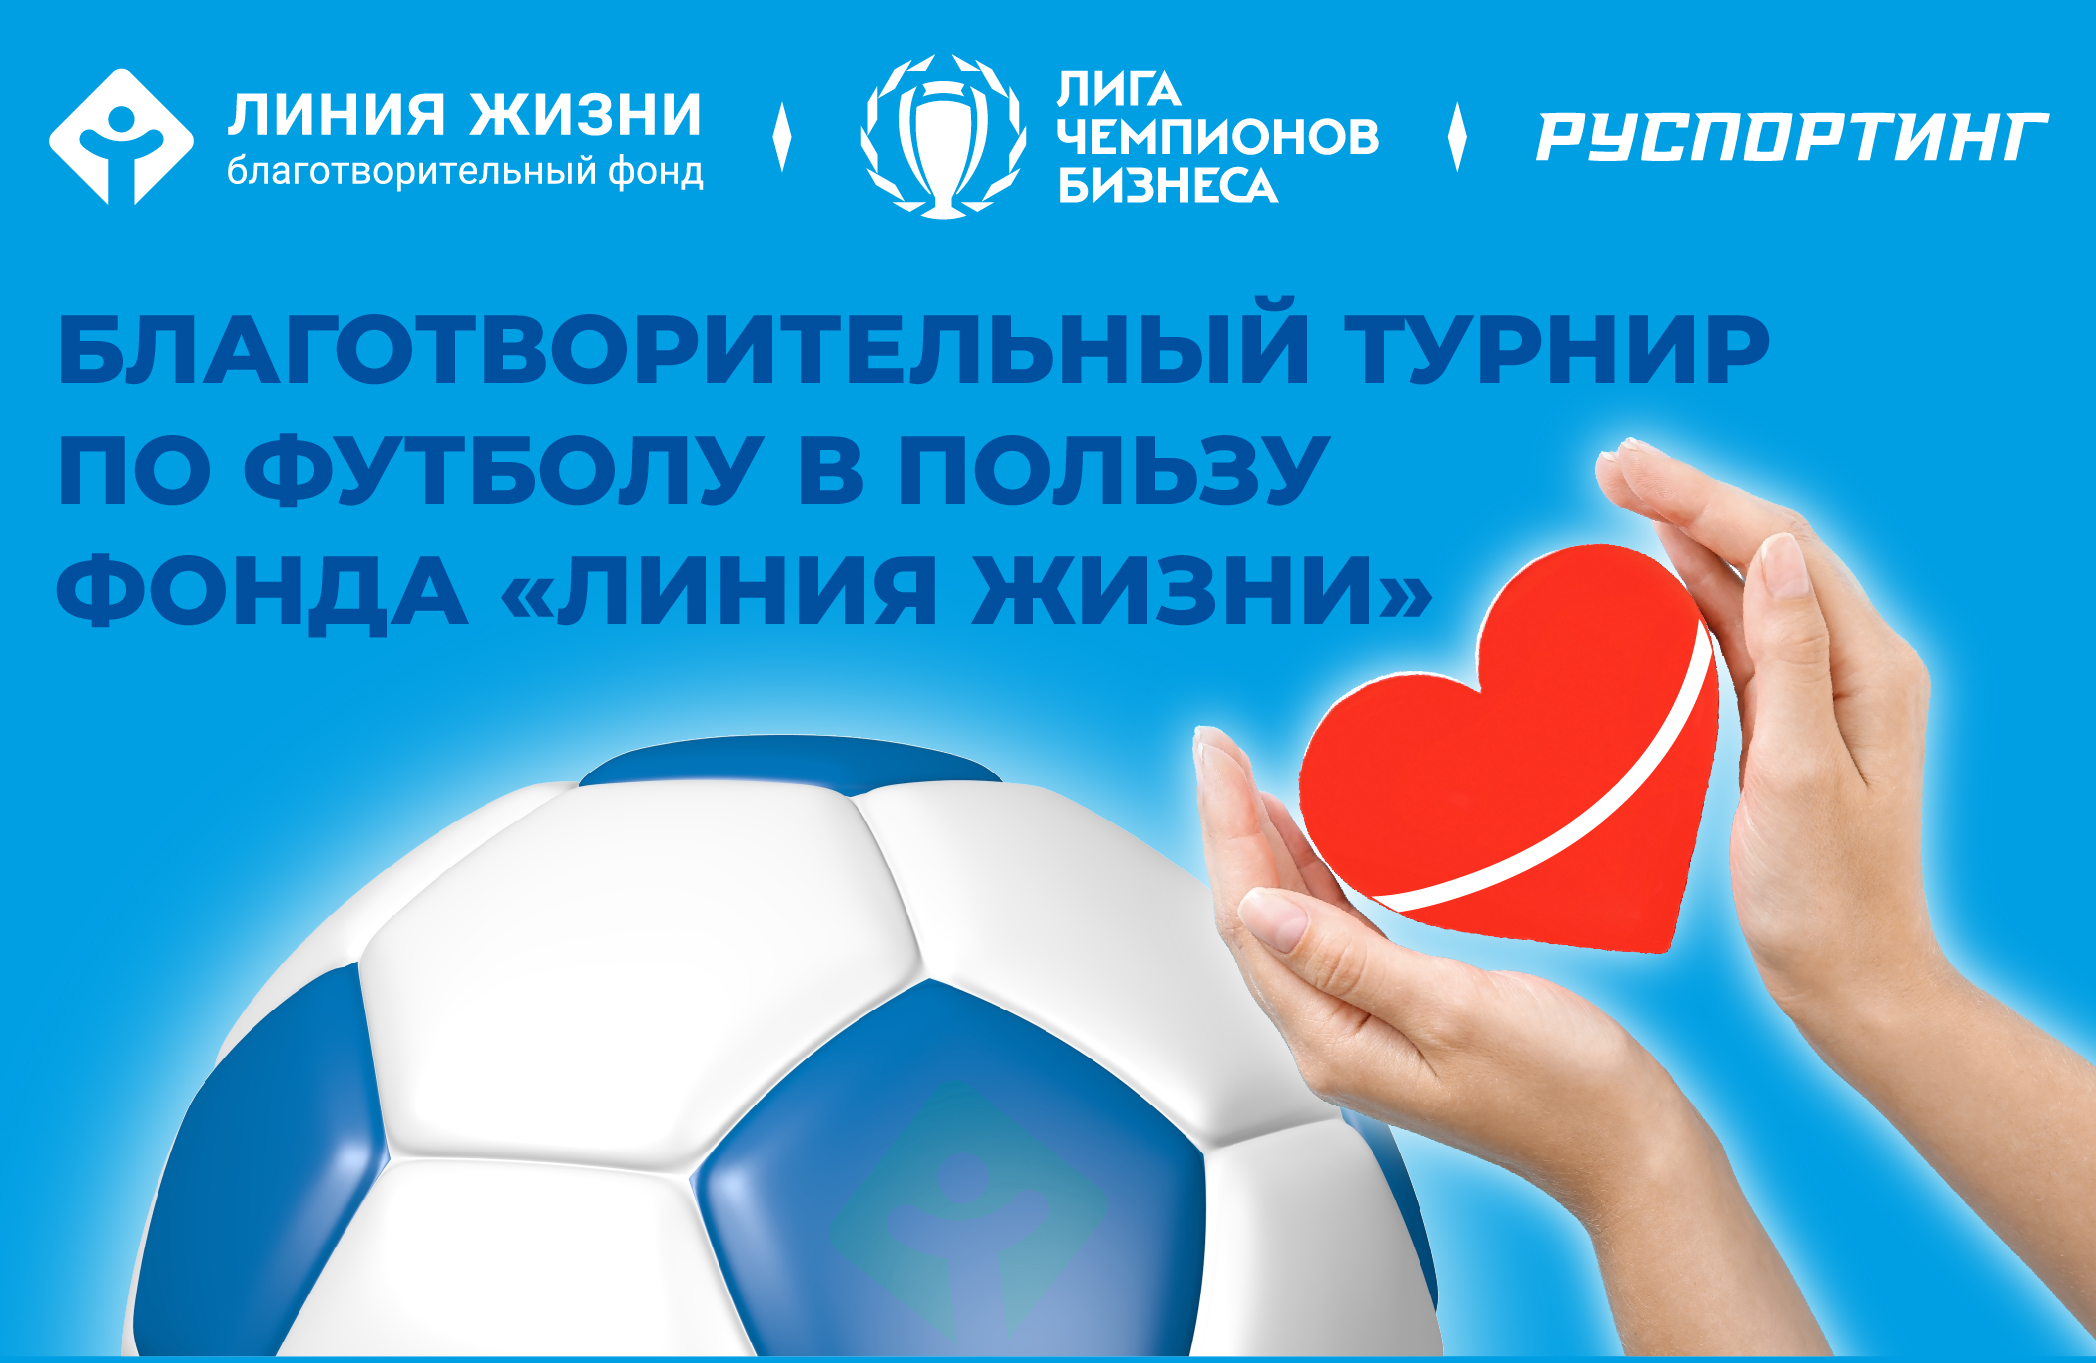 Прими участие в благотворительном турнире по футболу!